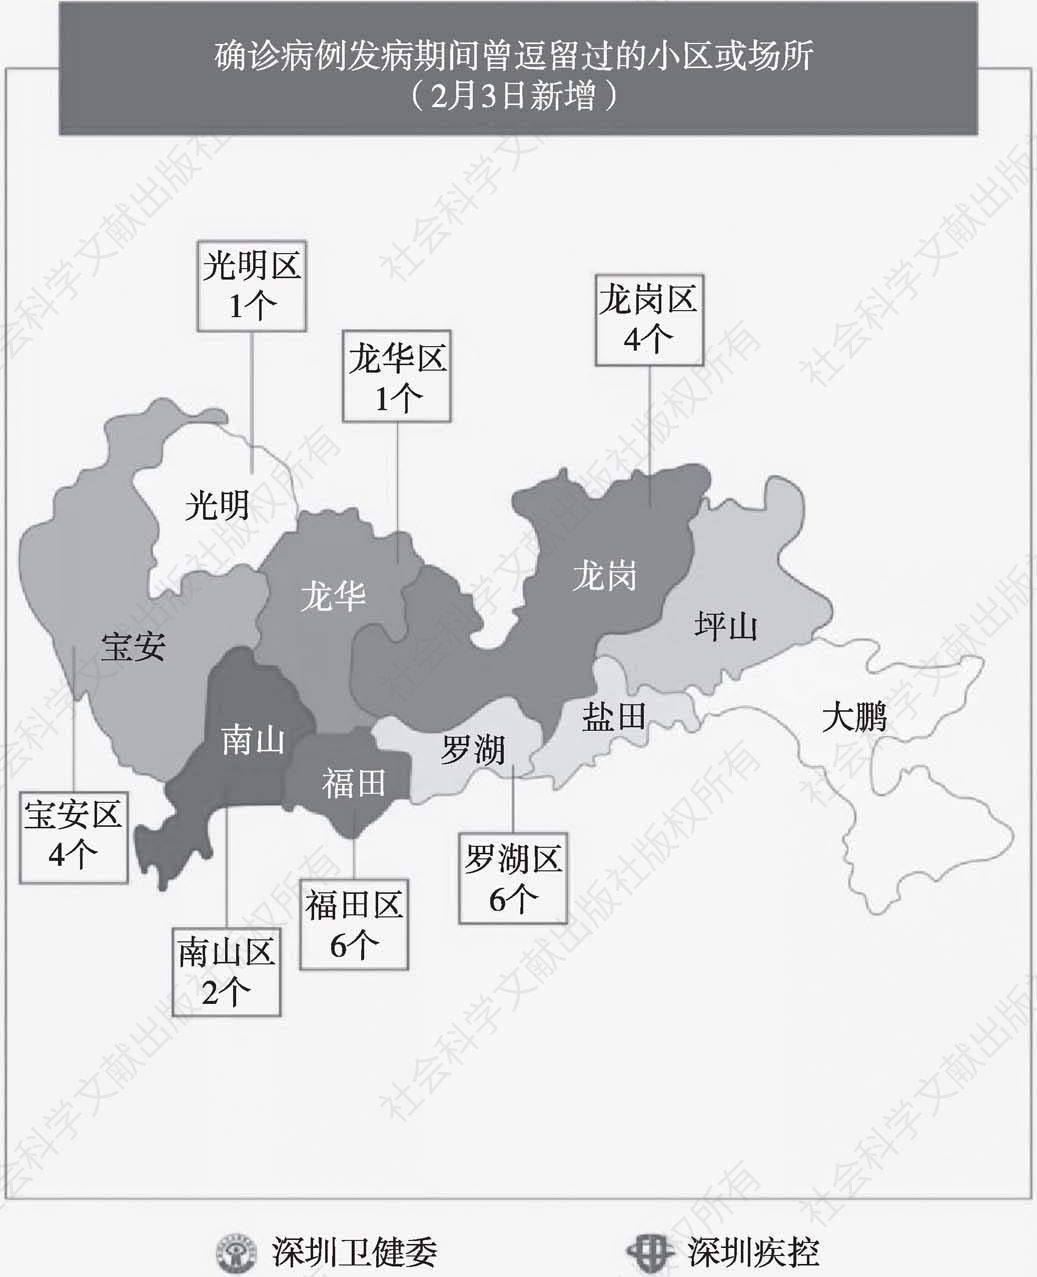 图9 深圳卫健委微信公众号公布新增新冠肺炎确诊病例分布示意